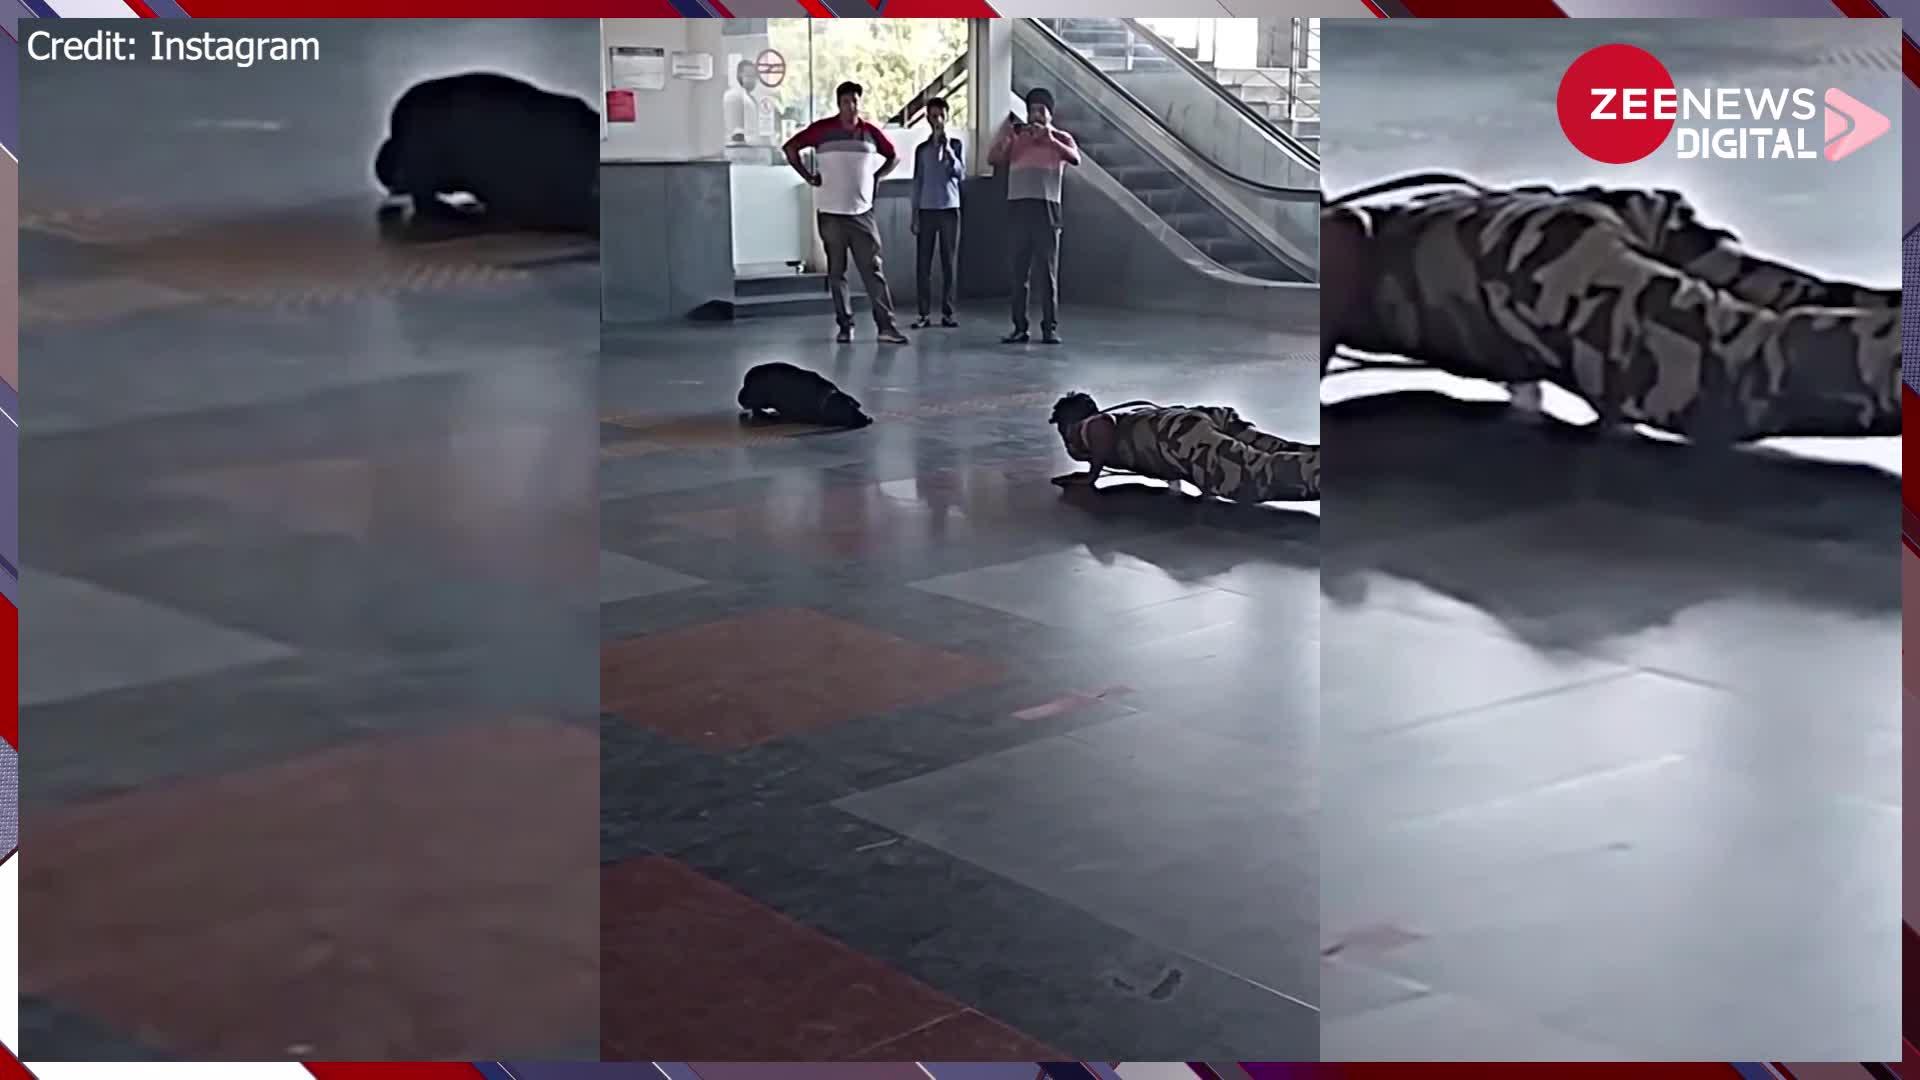 मेट्रो स्टेशन के अंदर योगा करता नजर आया यह कुत्ता, मौजूद लोग अवाक रह गए